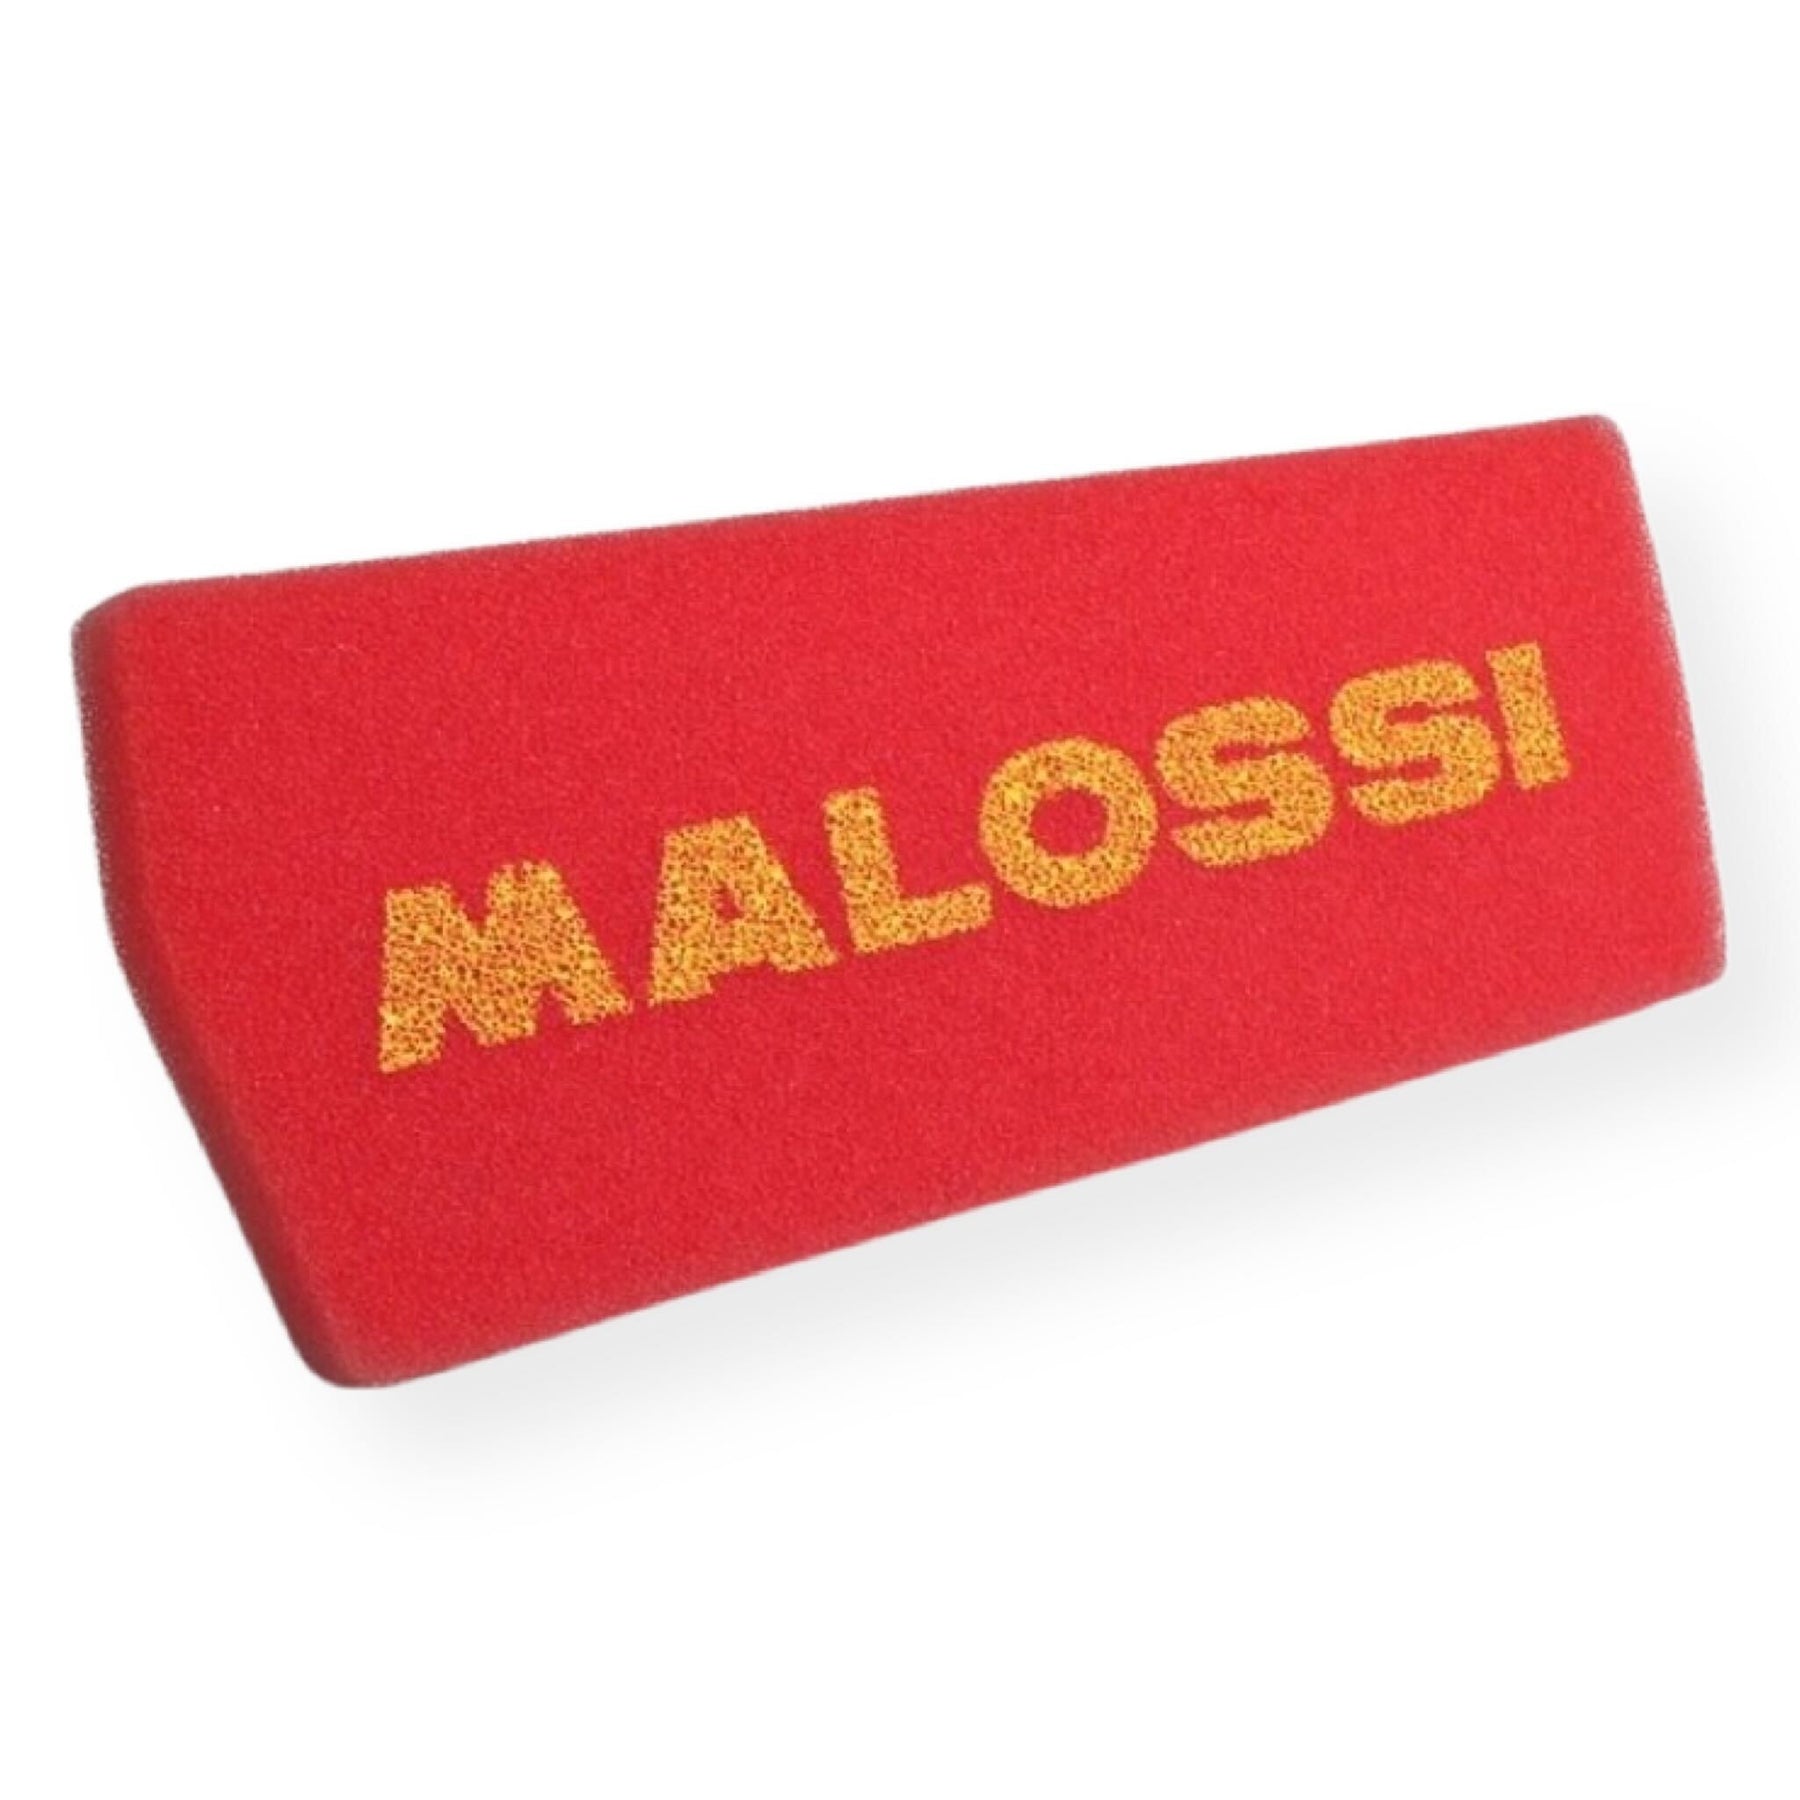 Aprilia Scarbeo 50 2-Stroke Malossi Red Sponge Air Filter